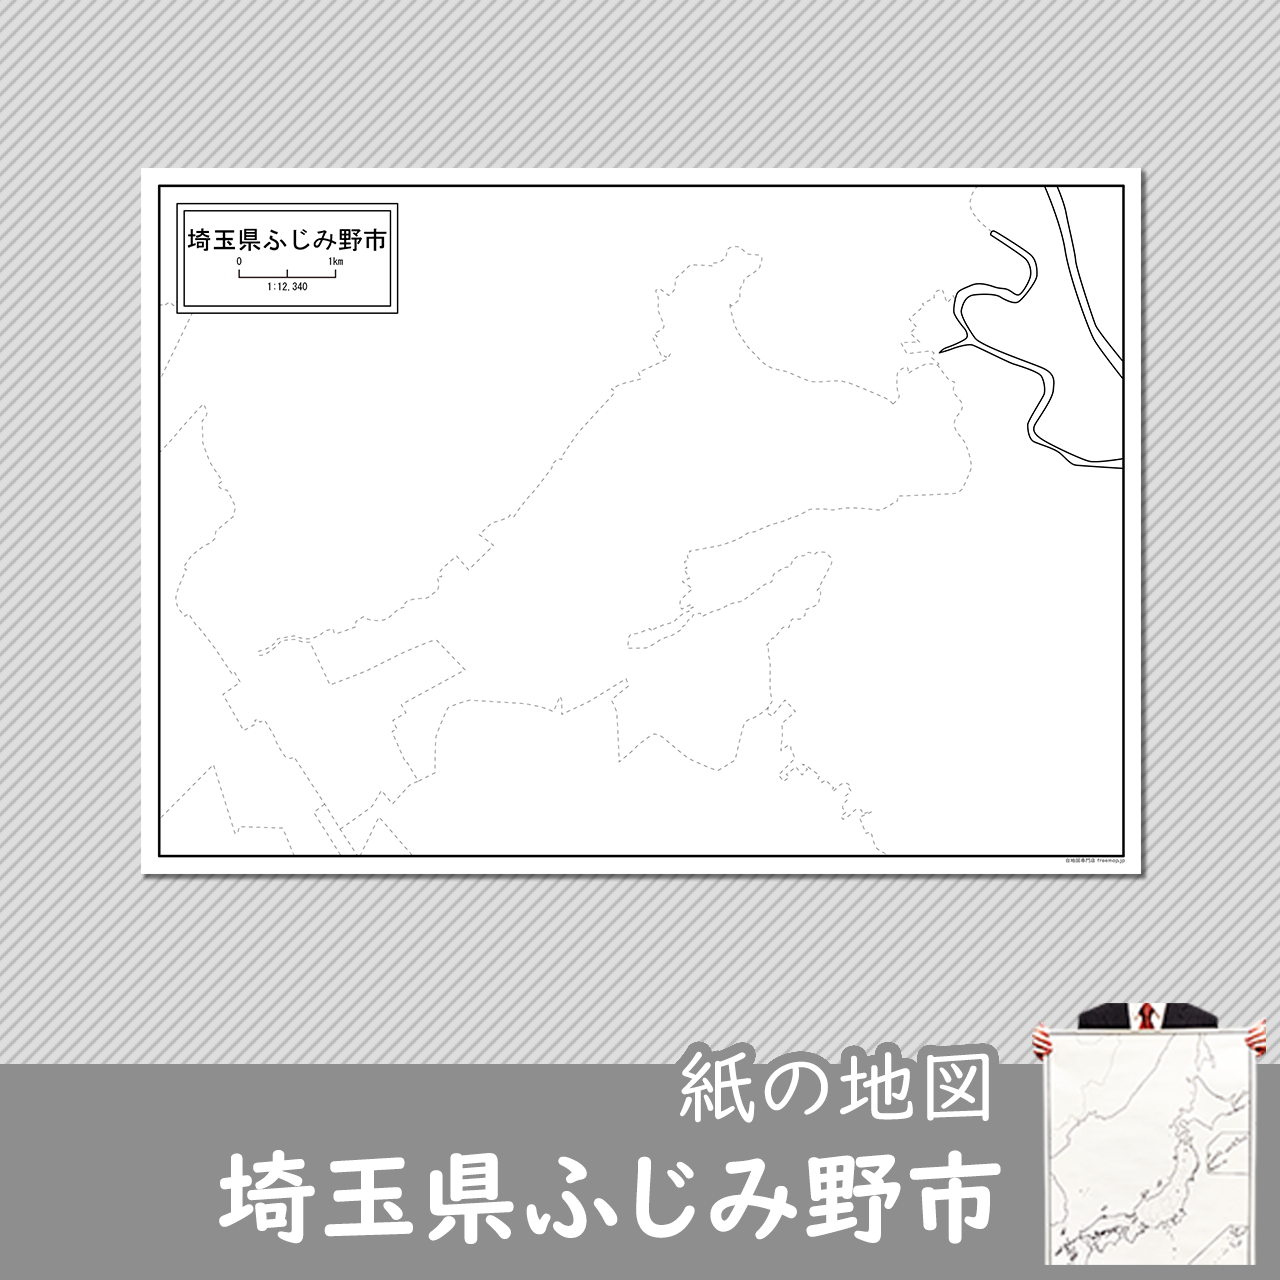 ふじみ野市の紙の白地図のサムネイル